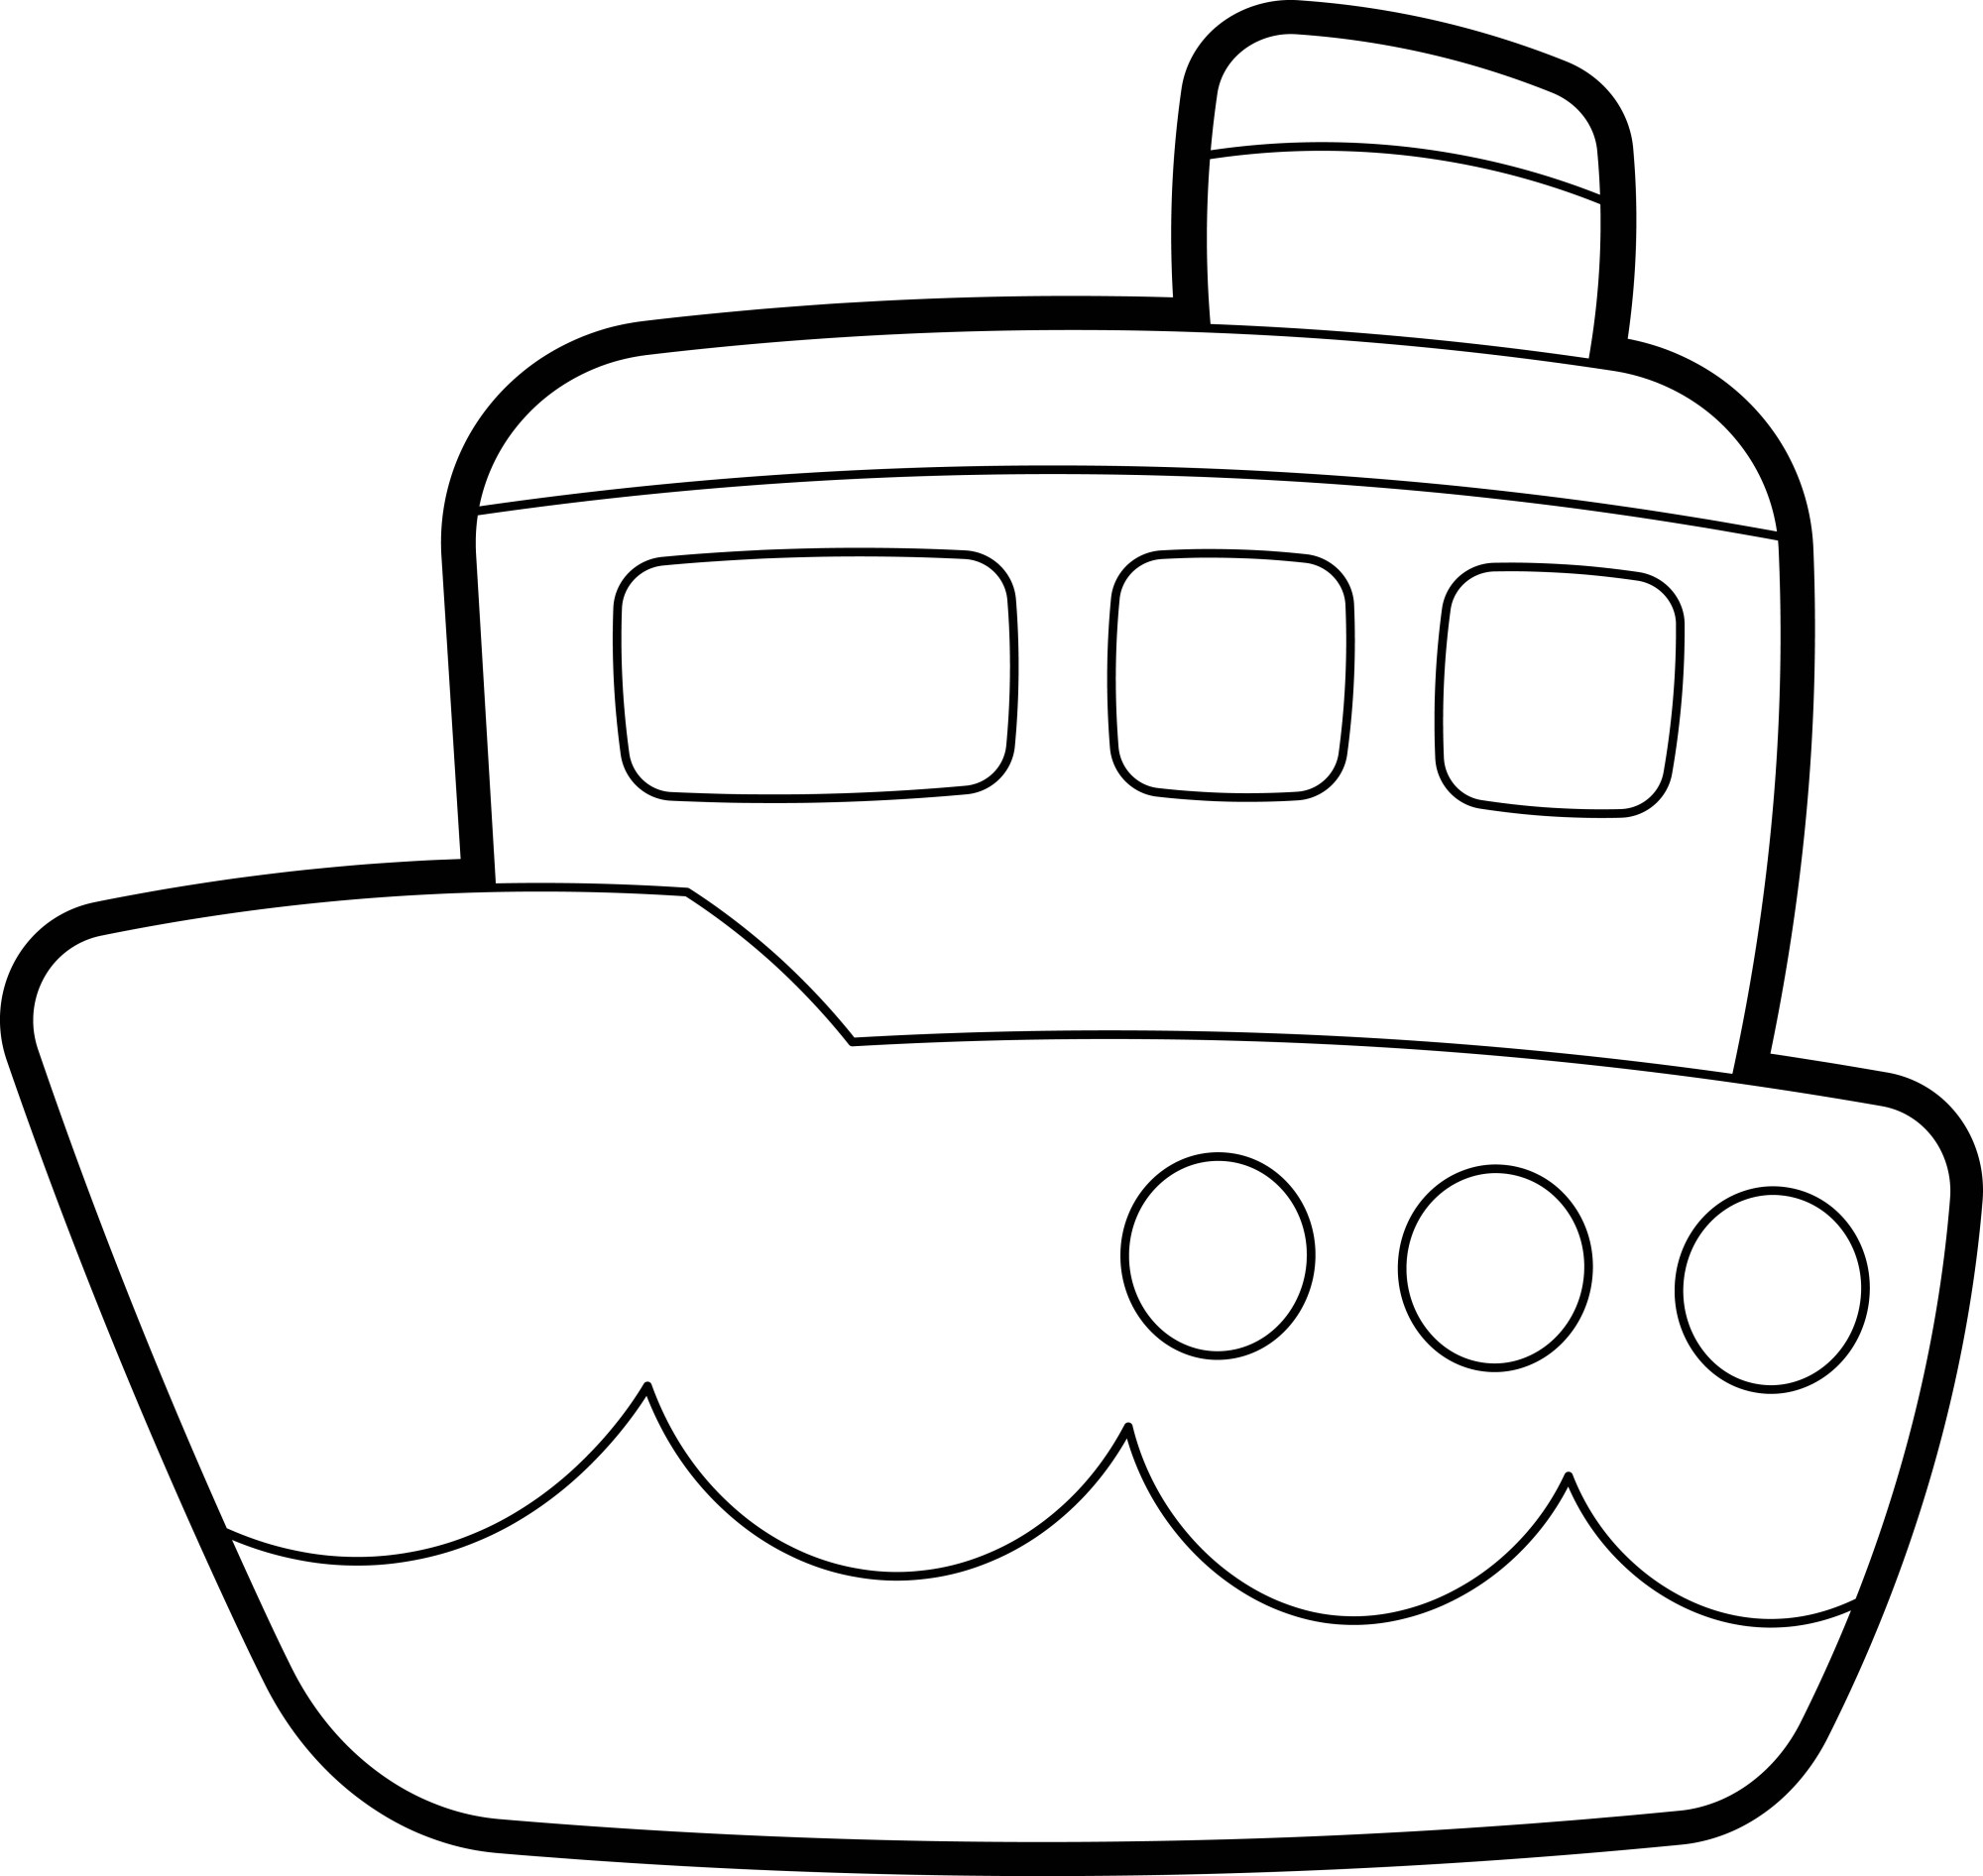 Раскраска для детей: кораблик «Спокойствие морской бескрайности»